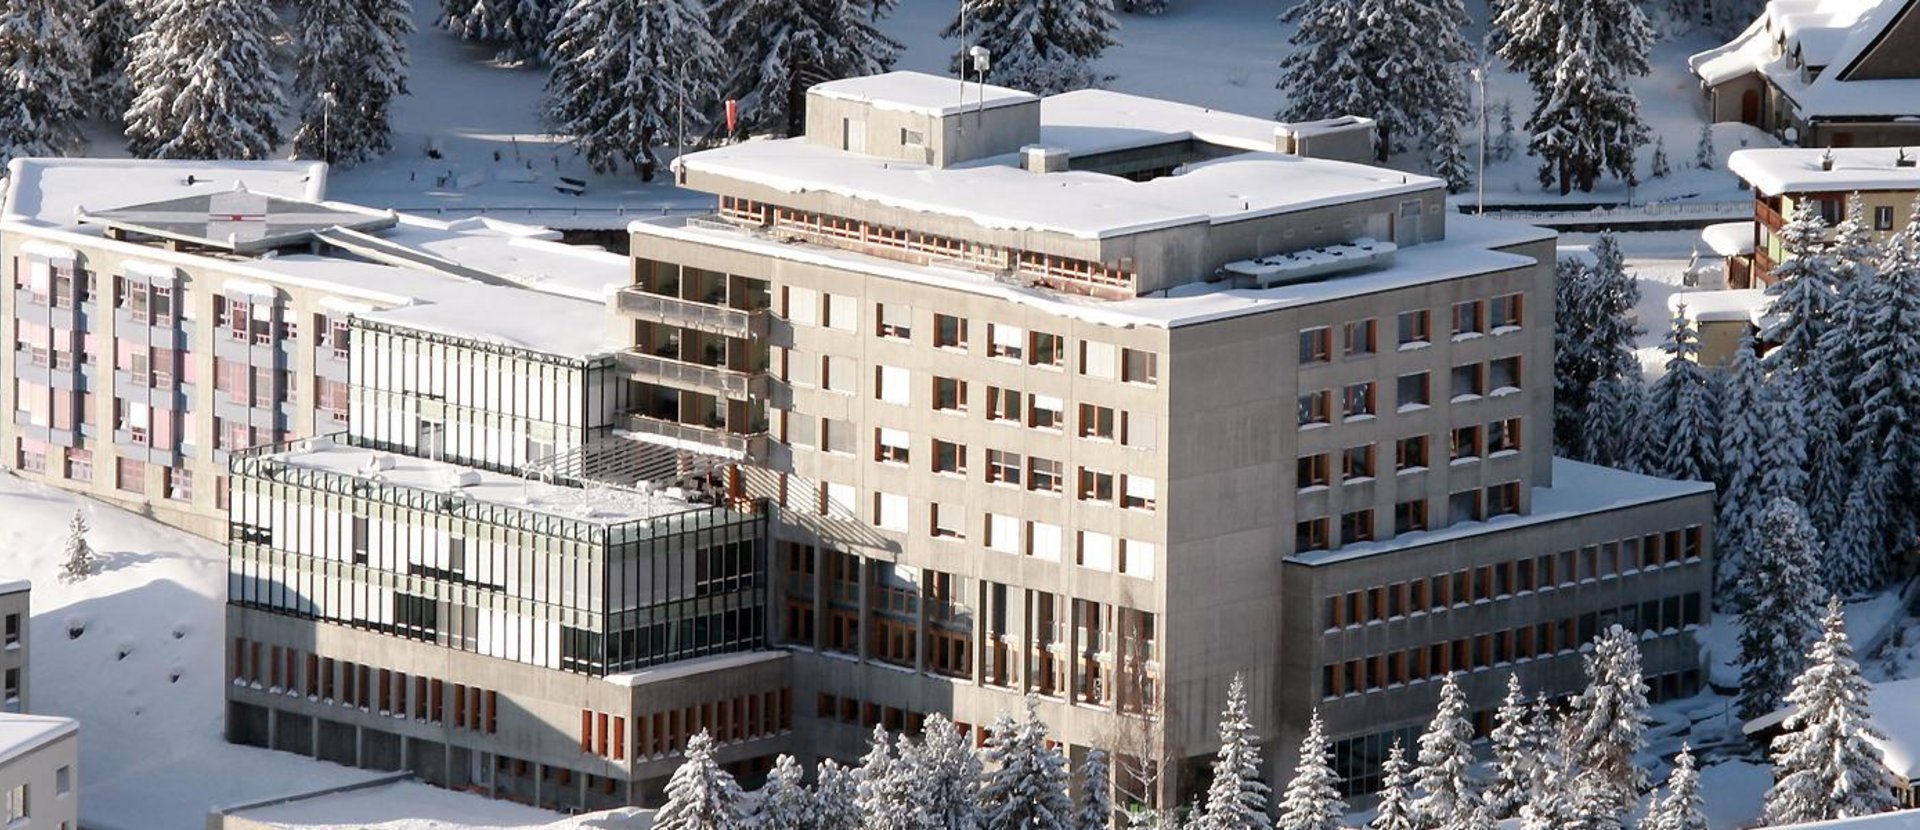 Davos hospital & clinics